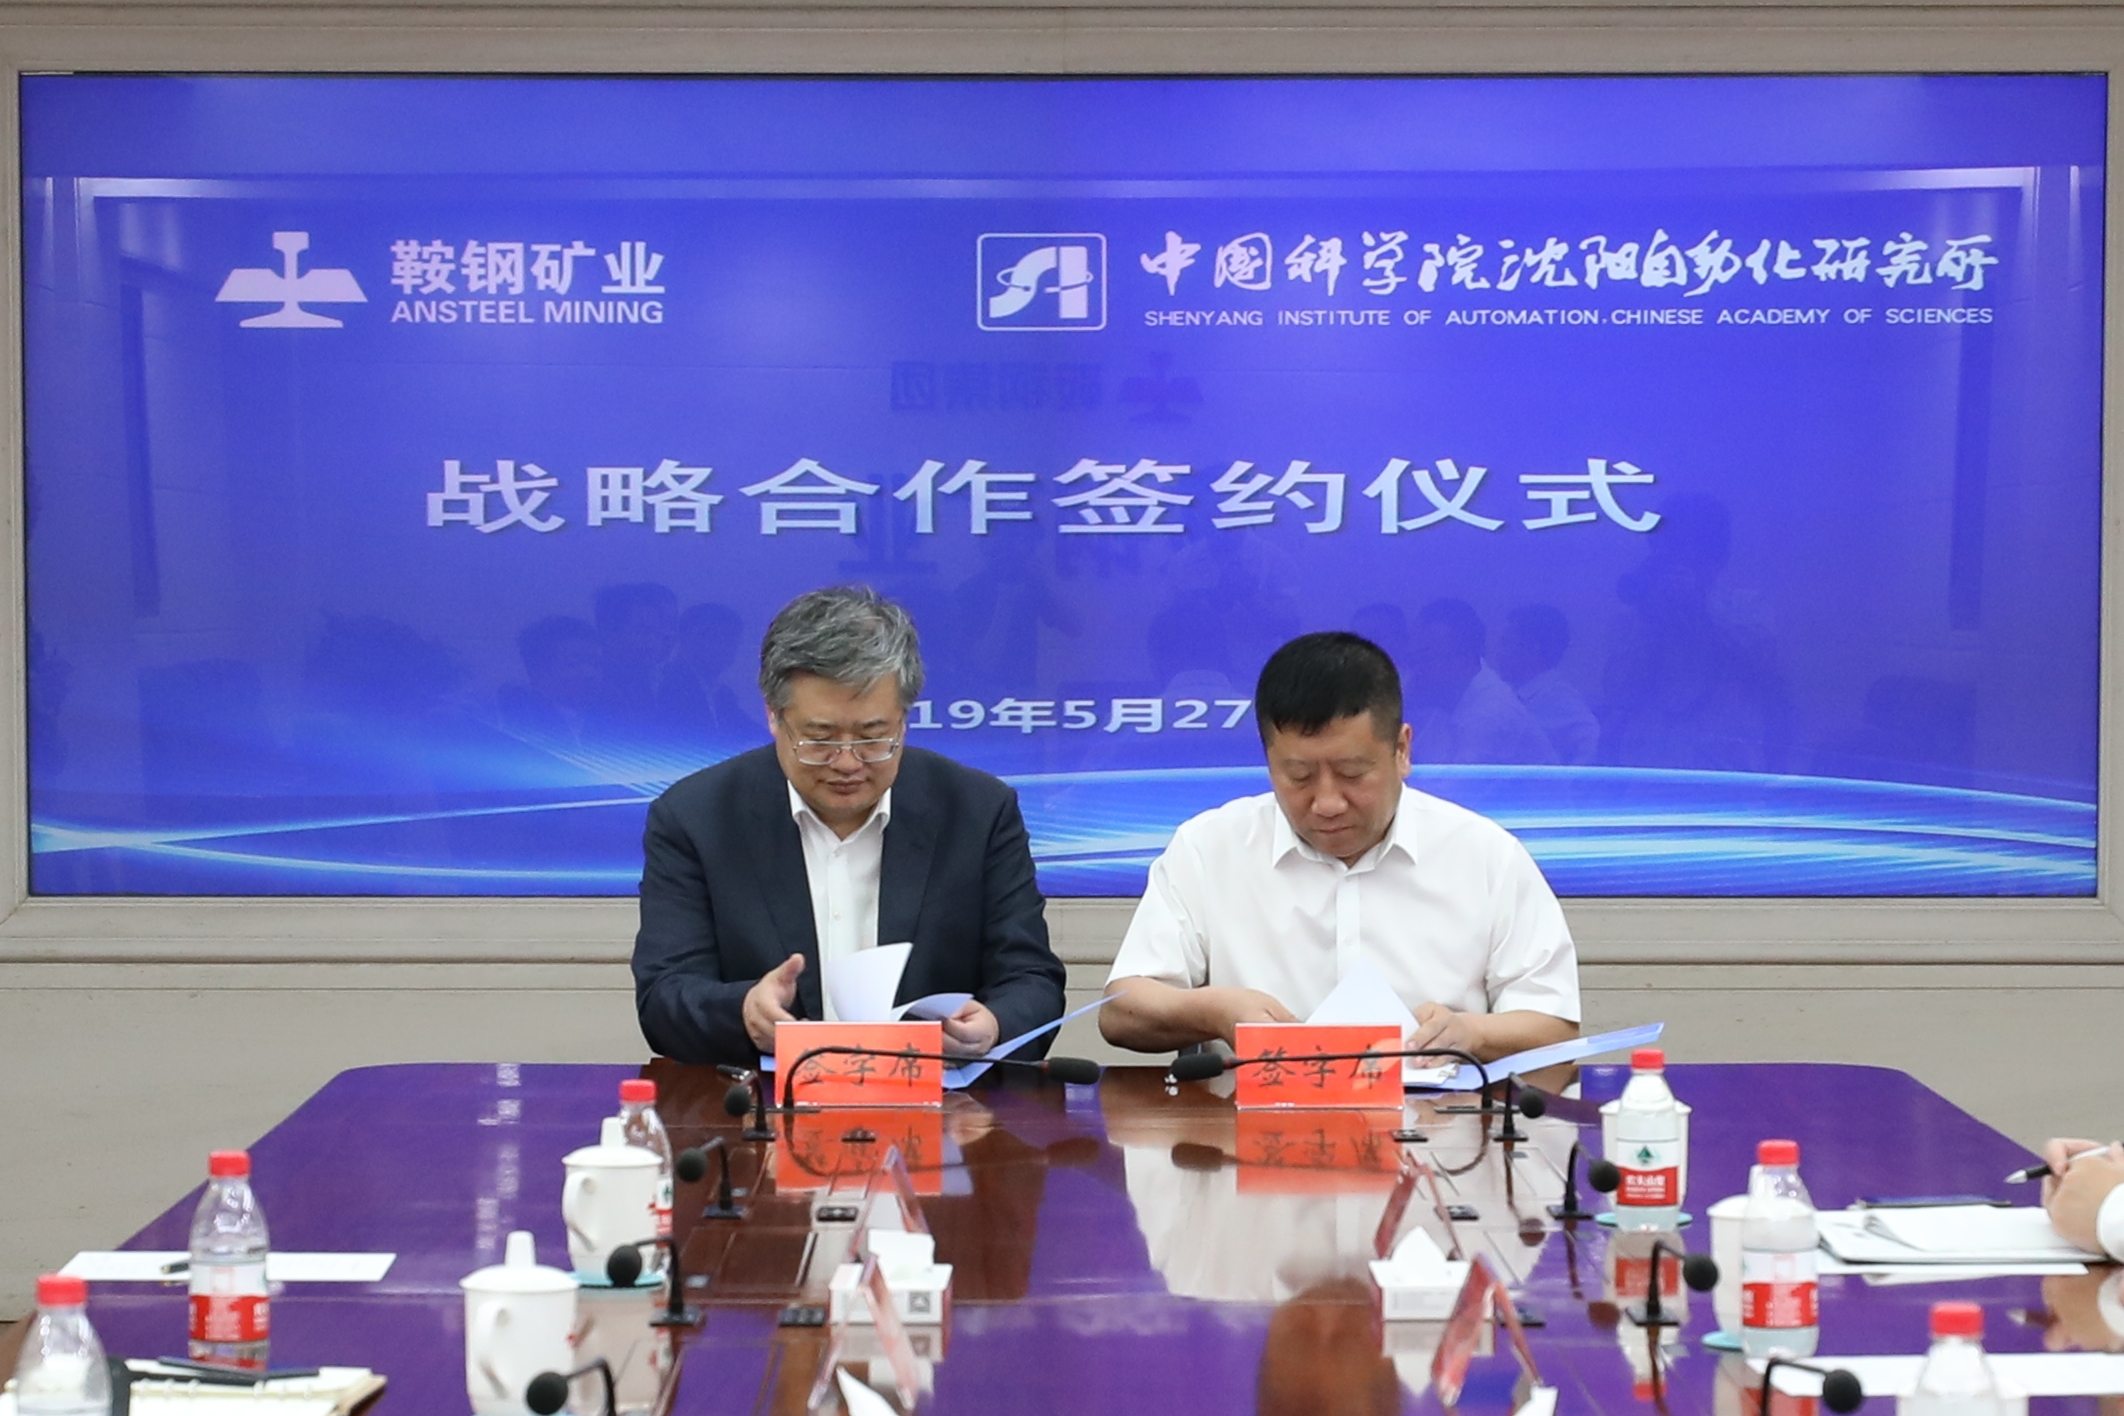 沈阳自动化所与鞍钢矿业公司签署战略合作协议